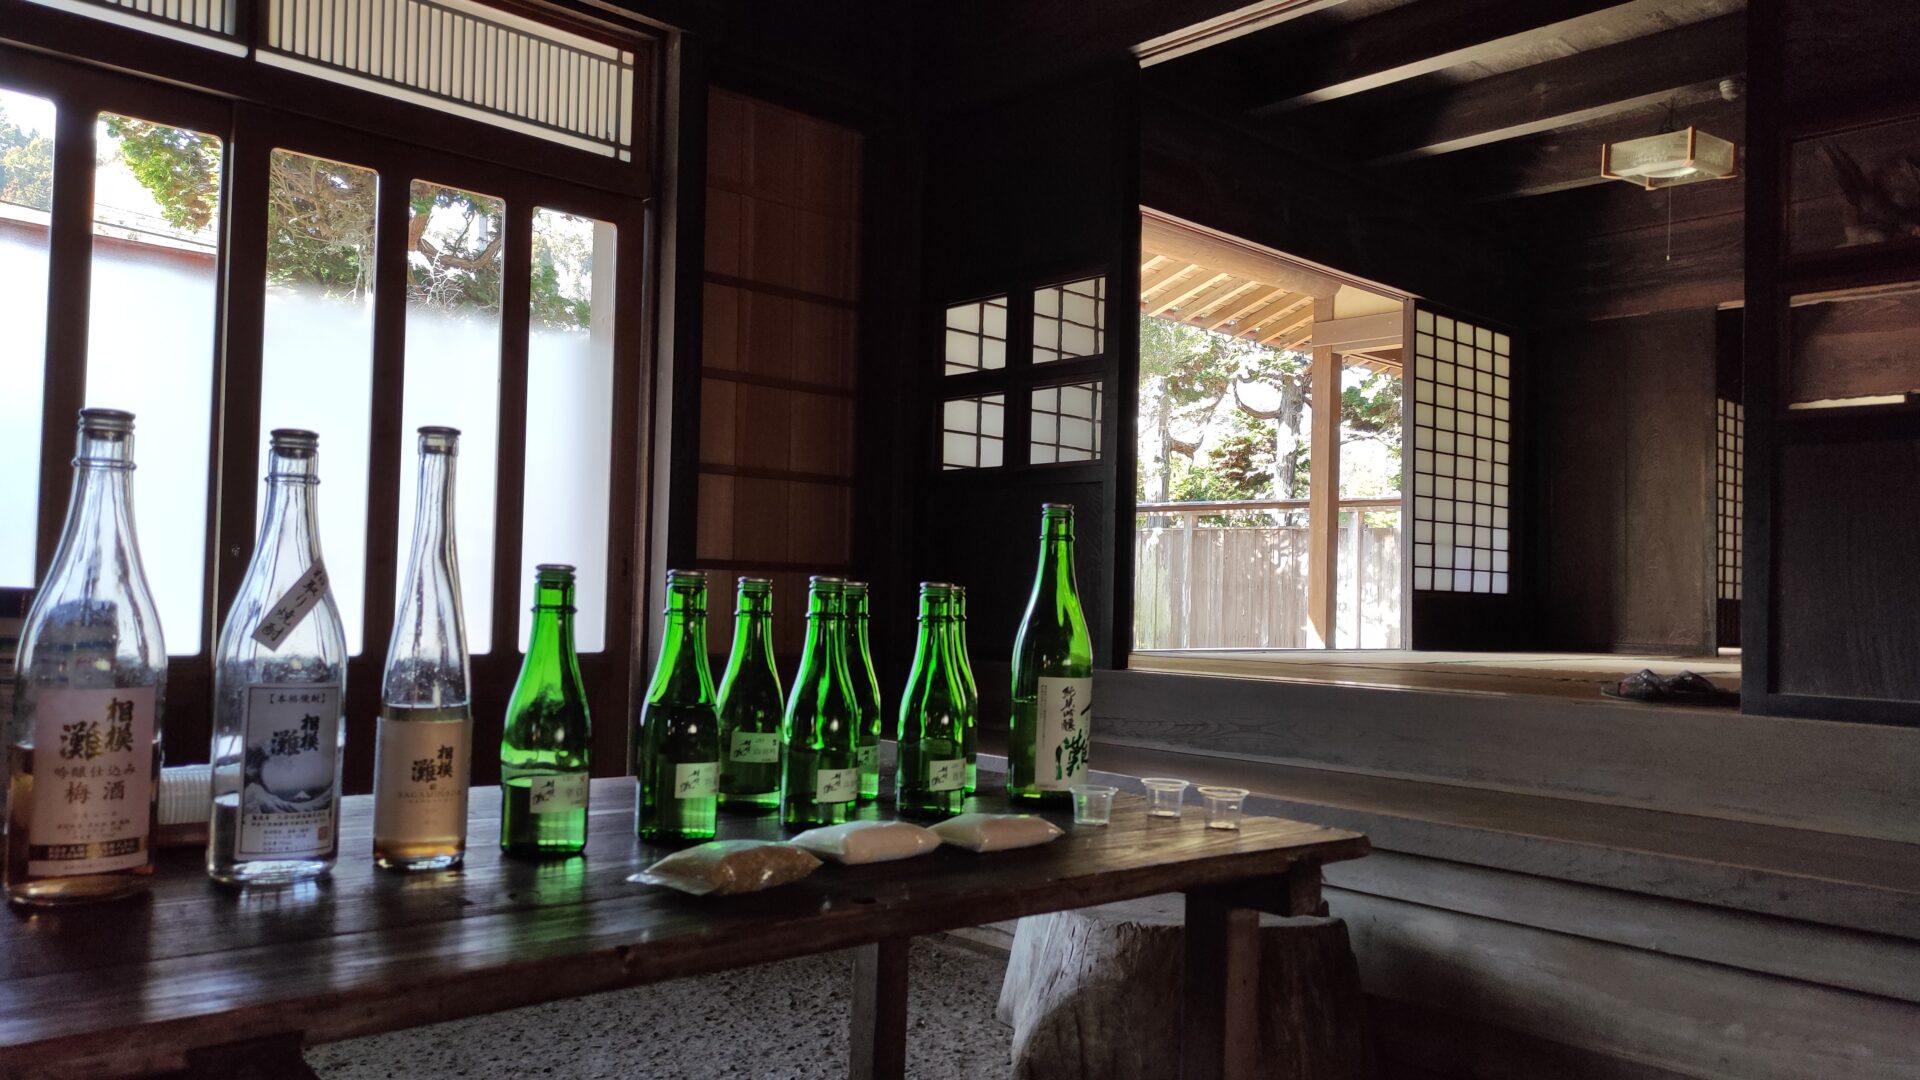 緑区の「久保田酒造」さんで酒蔵見学させていただきました。31